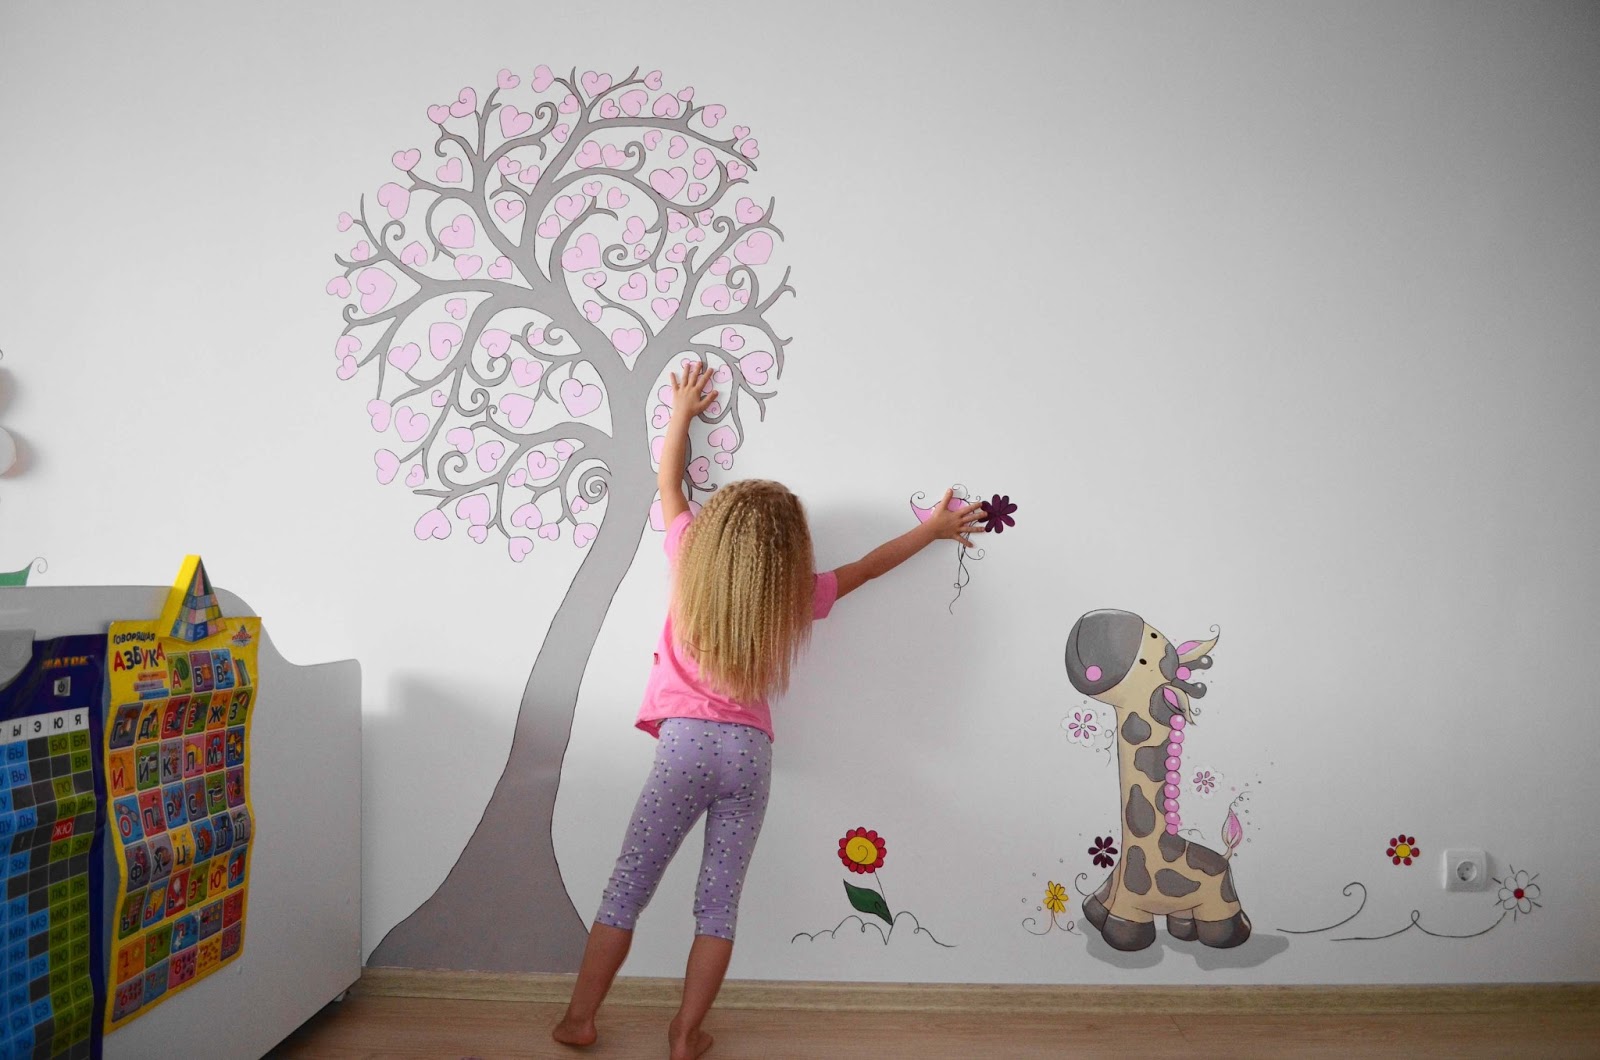 Рисунок на стене своими руками: реализация в квартире без художественного опыта